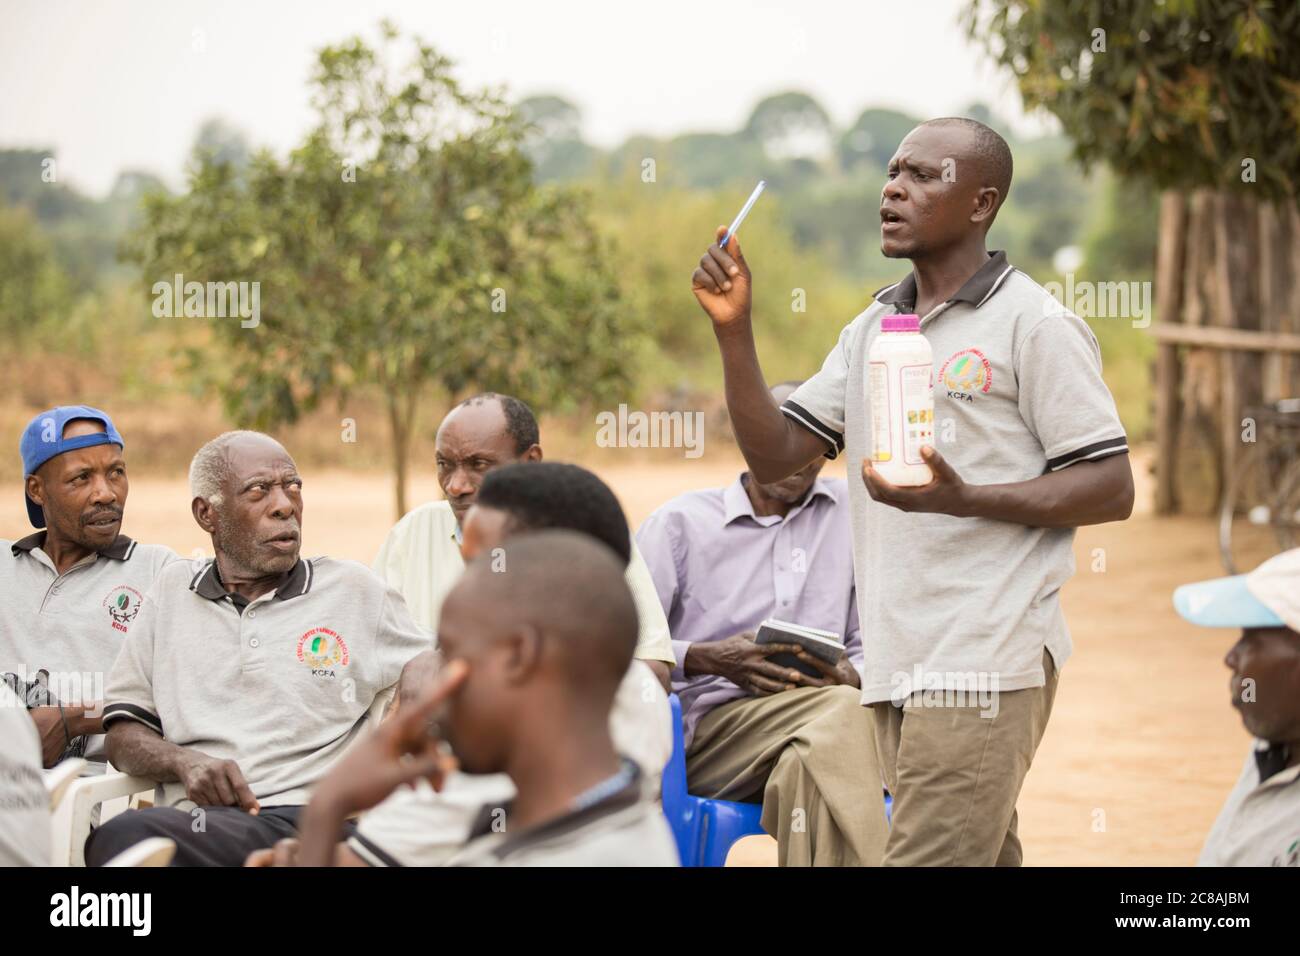 Un trabajador de extensión agrícola educa a los pequeños agricultores y los vende en una reunión comunitaria en el distrito de Kyotera, Uganda. Foto de stock